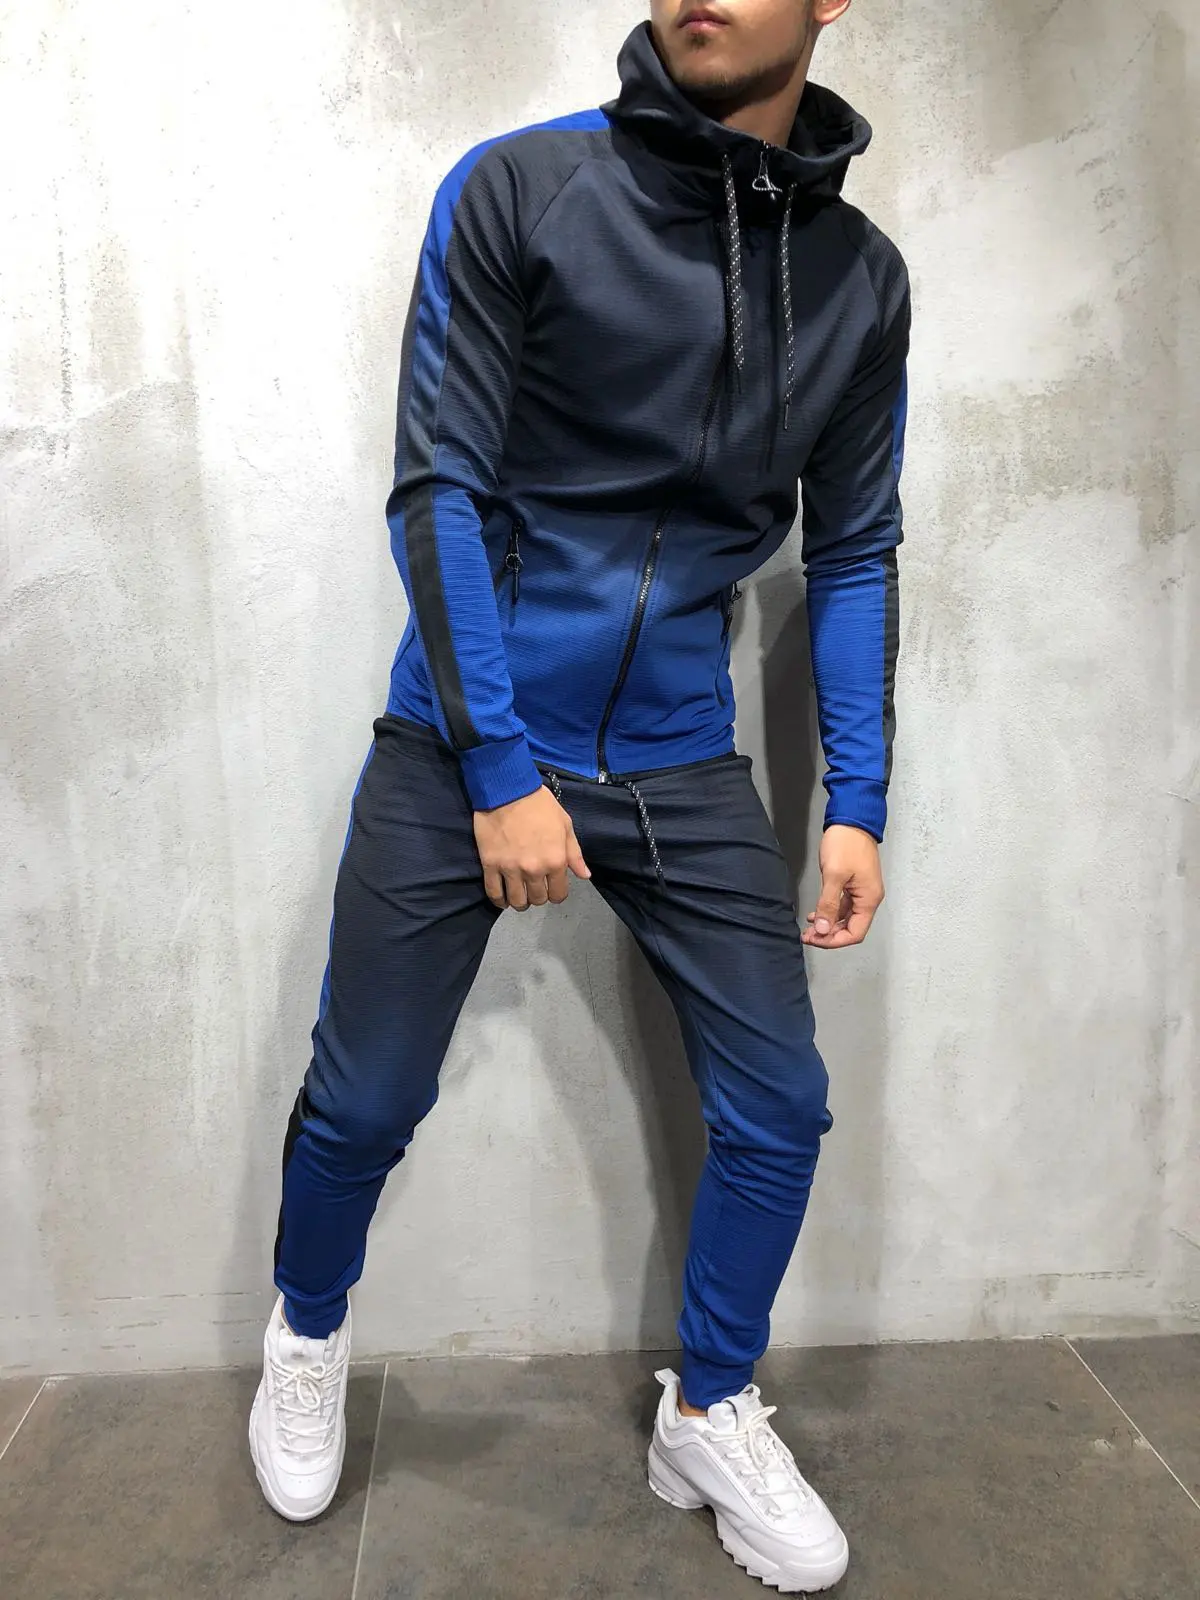 Костюм спортивный мужской с капюшоном, приталенный брендовый костюм на молнии, в стиле хип-хоп, с 3D градиентным принтом, спортивная одежда, к... от AliExpress RU&CIS NEW